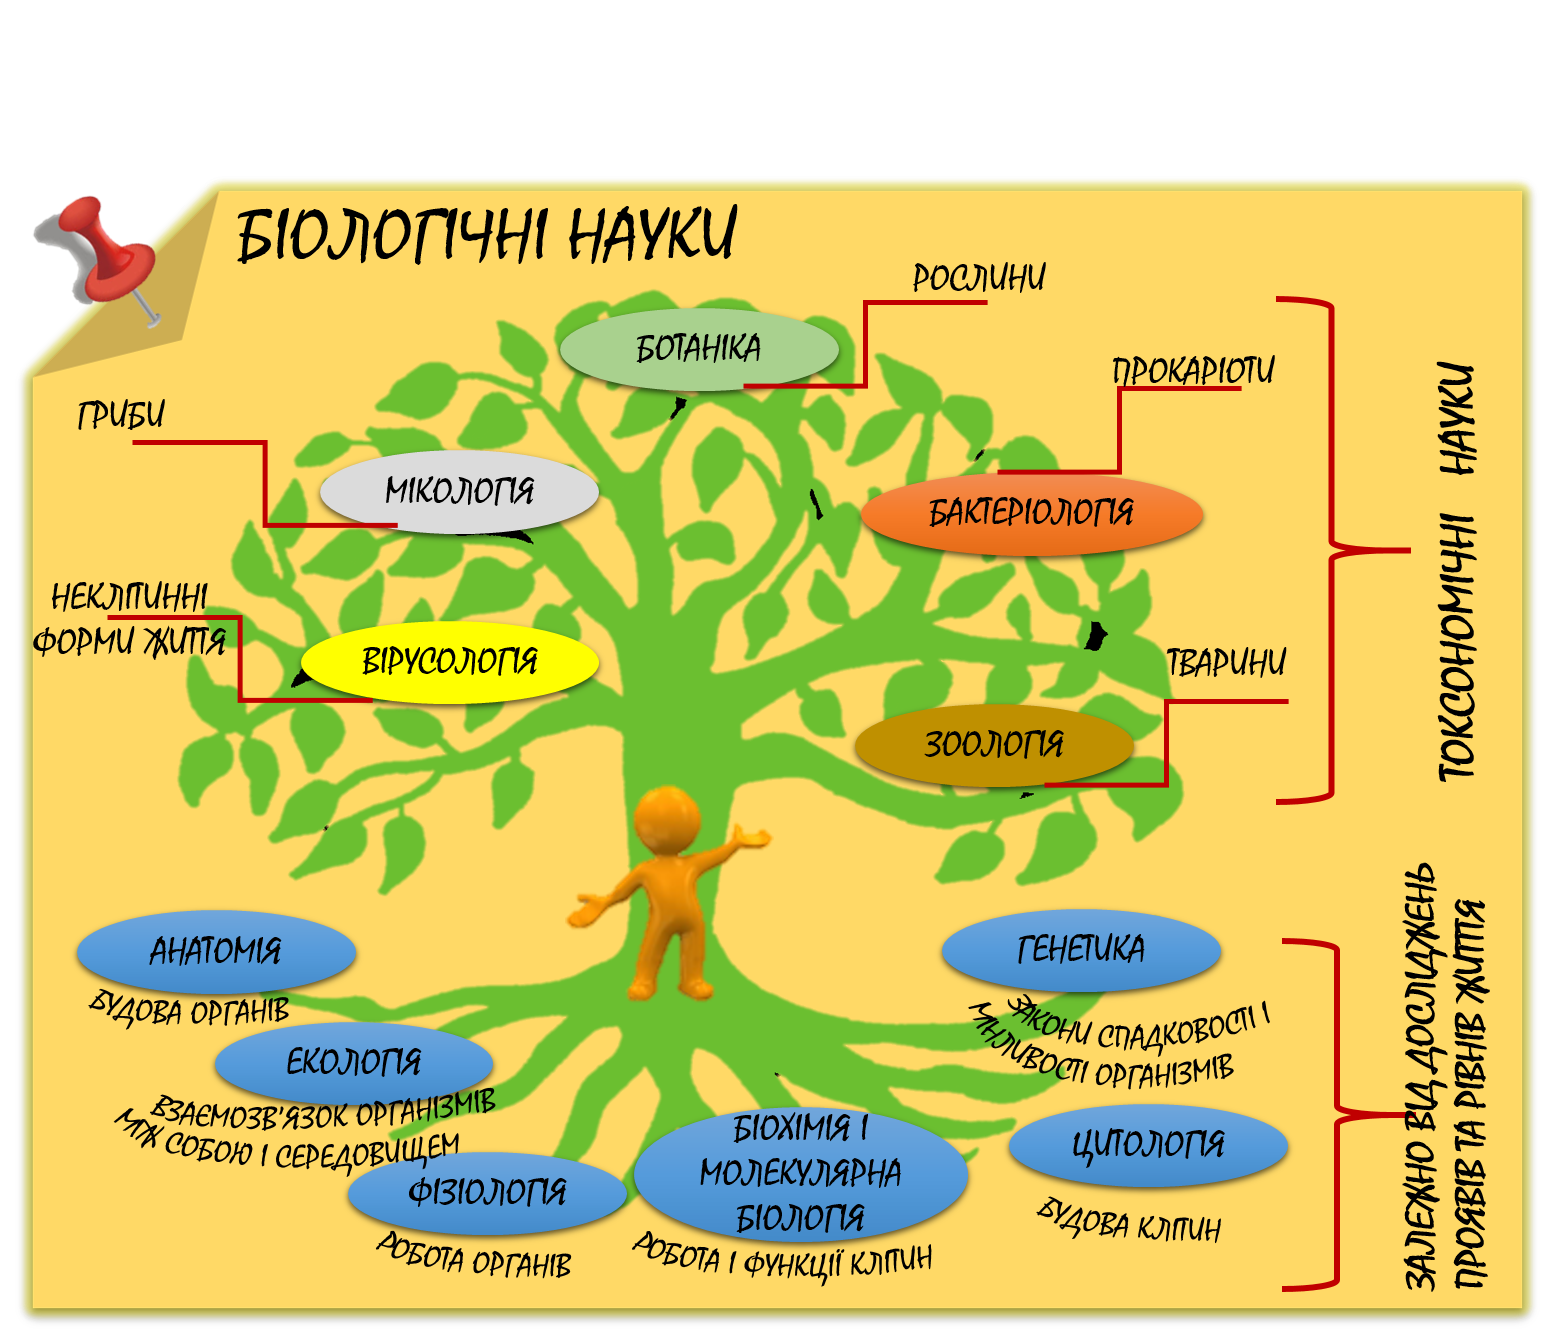 Какие есть области биологической науки. Биологические дисциплины. Дерево биологических наук. Дерево биологических дисциплин. Комплекс биологических наук.